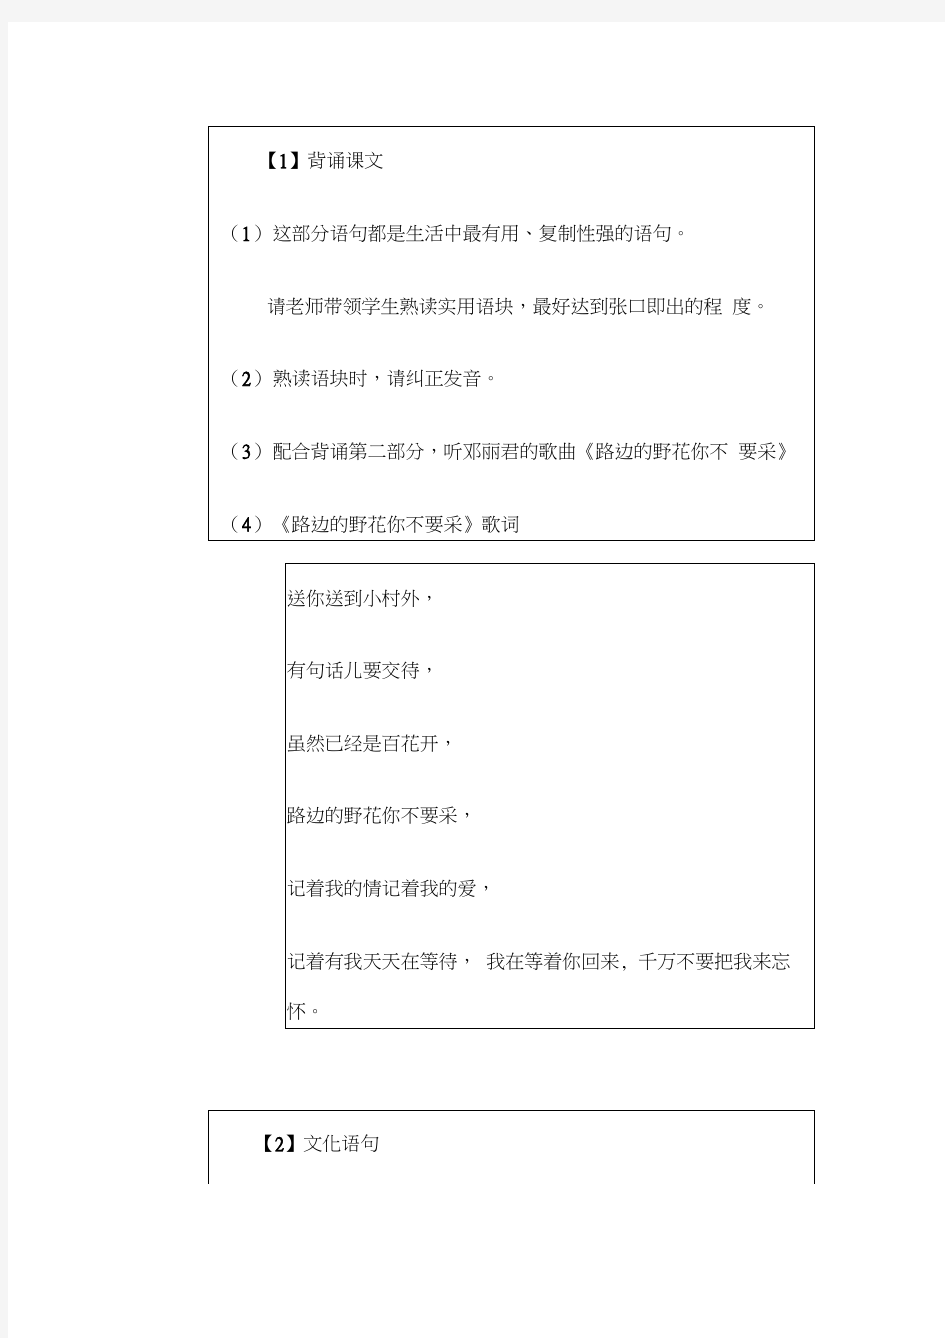 《发展汉语(第二版)初级读写Ⅱ》全套教案(20200814115048)